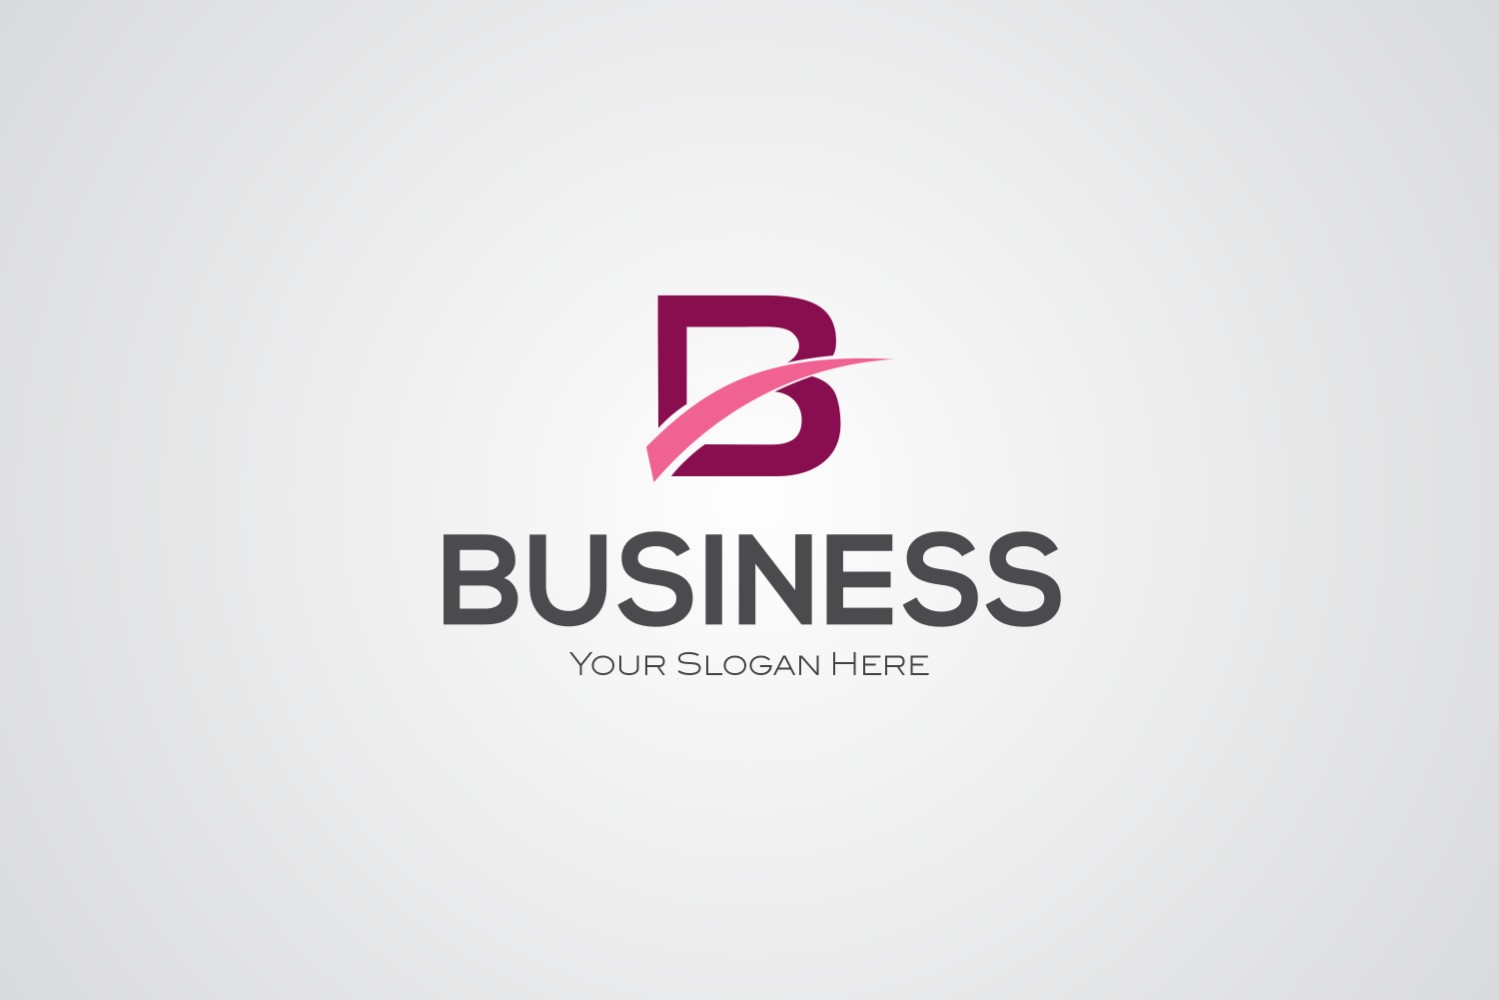 Business Corporate Logo Design Template